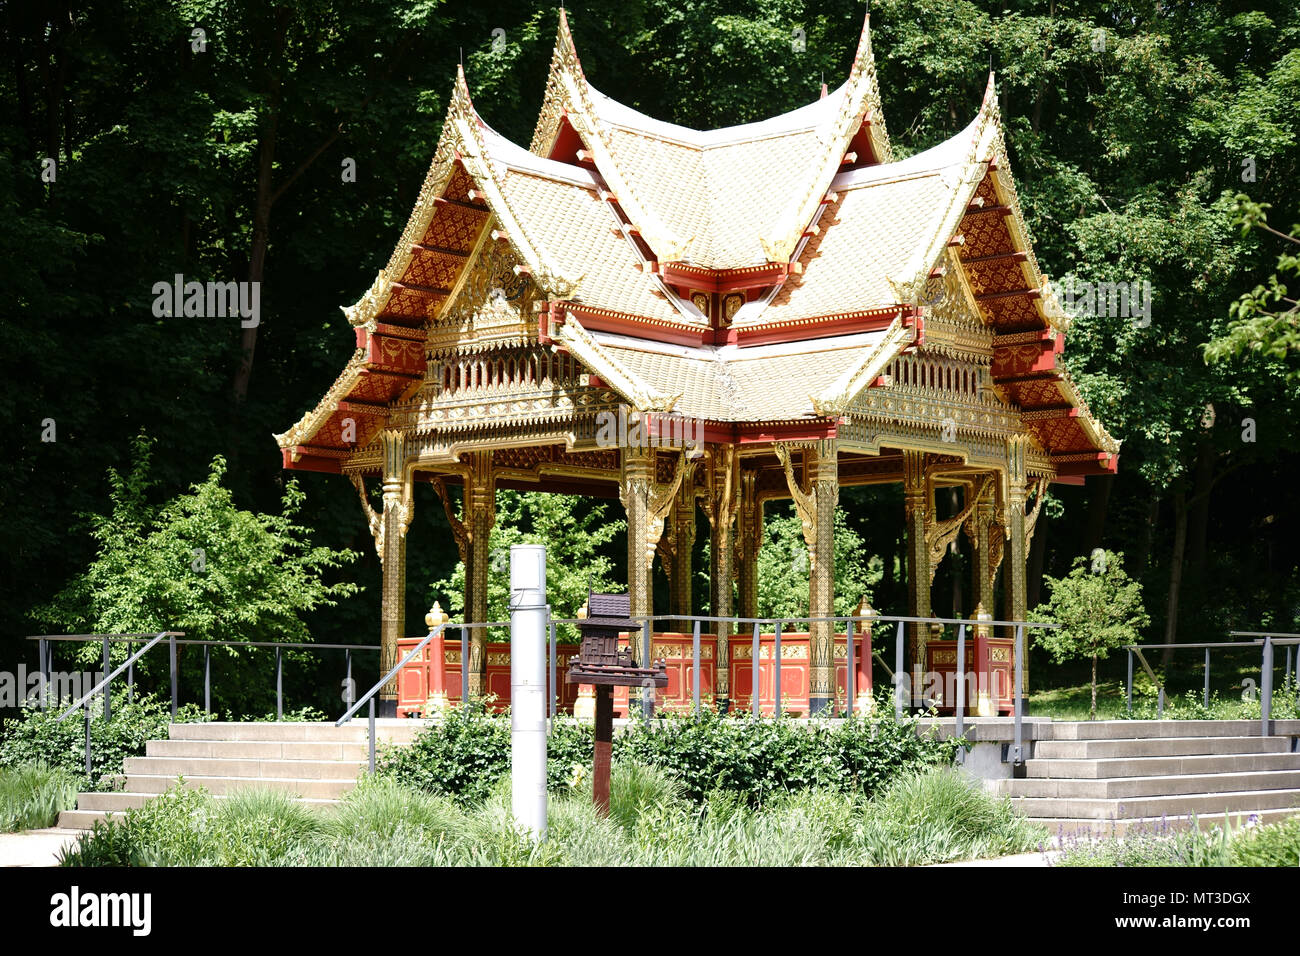 Bad Homburg, Deutschland - 19. Mai 2018: Die thai-sala Pavillon reich mit  Gold und Schmuck am Brunnen im Kurpark eingerichtet am 19. Mai, 201  Stockfotografie - Alamy